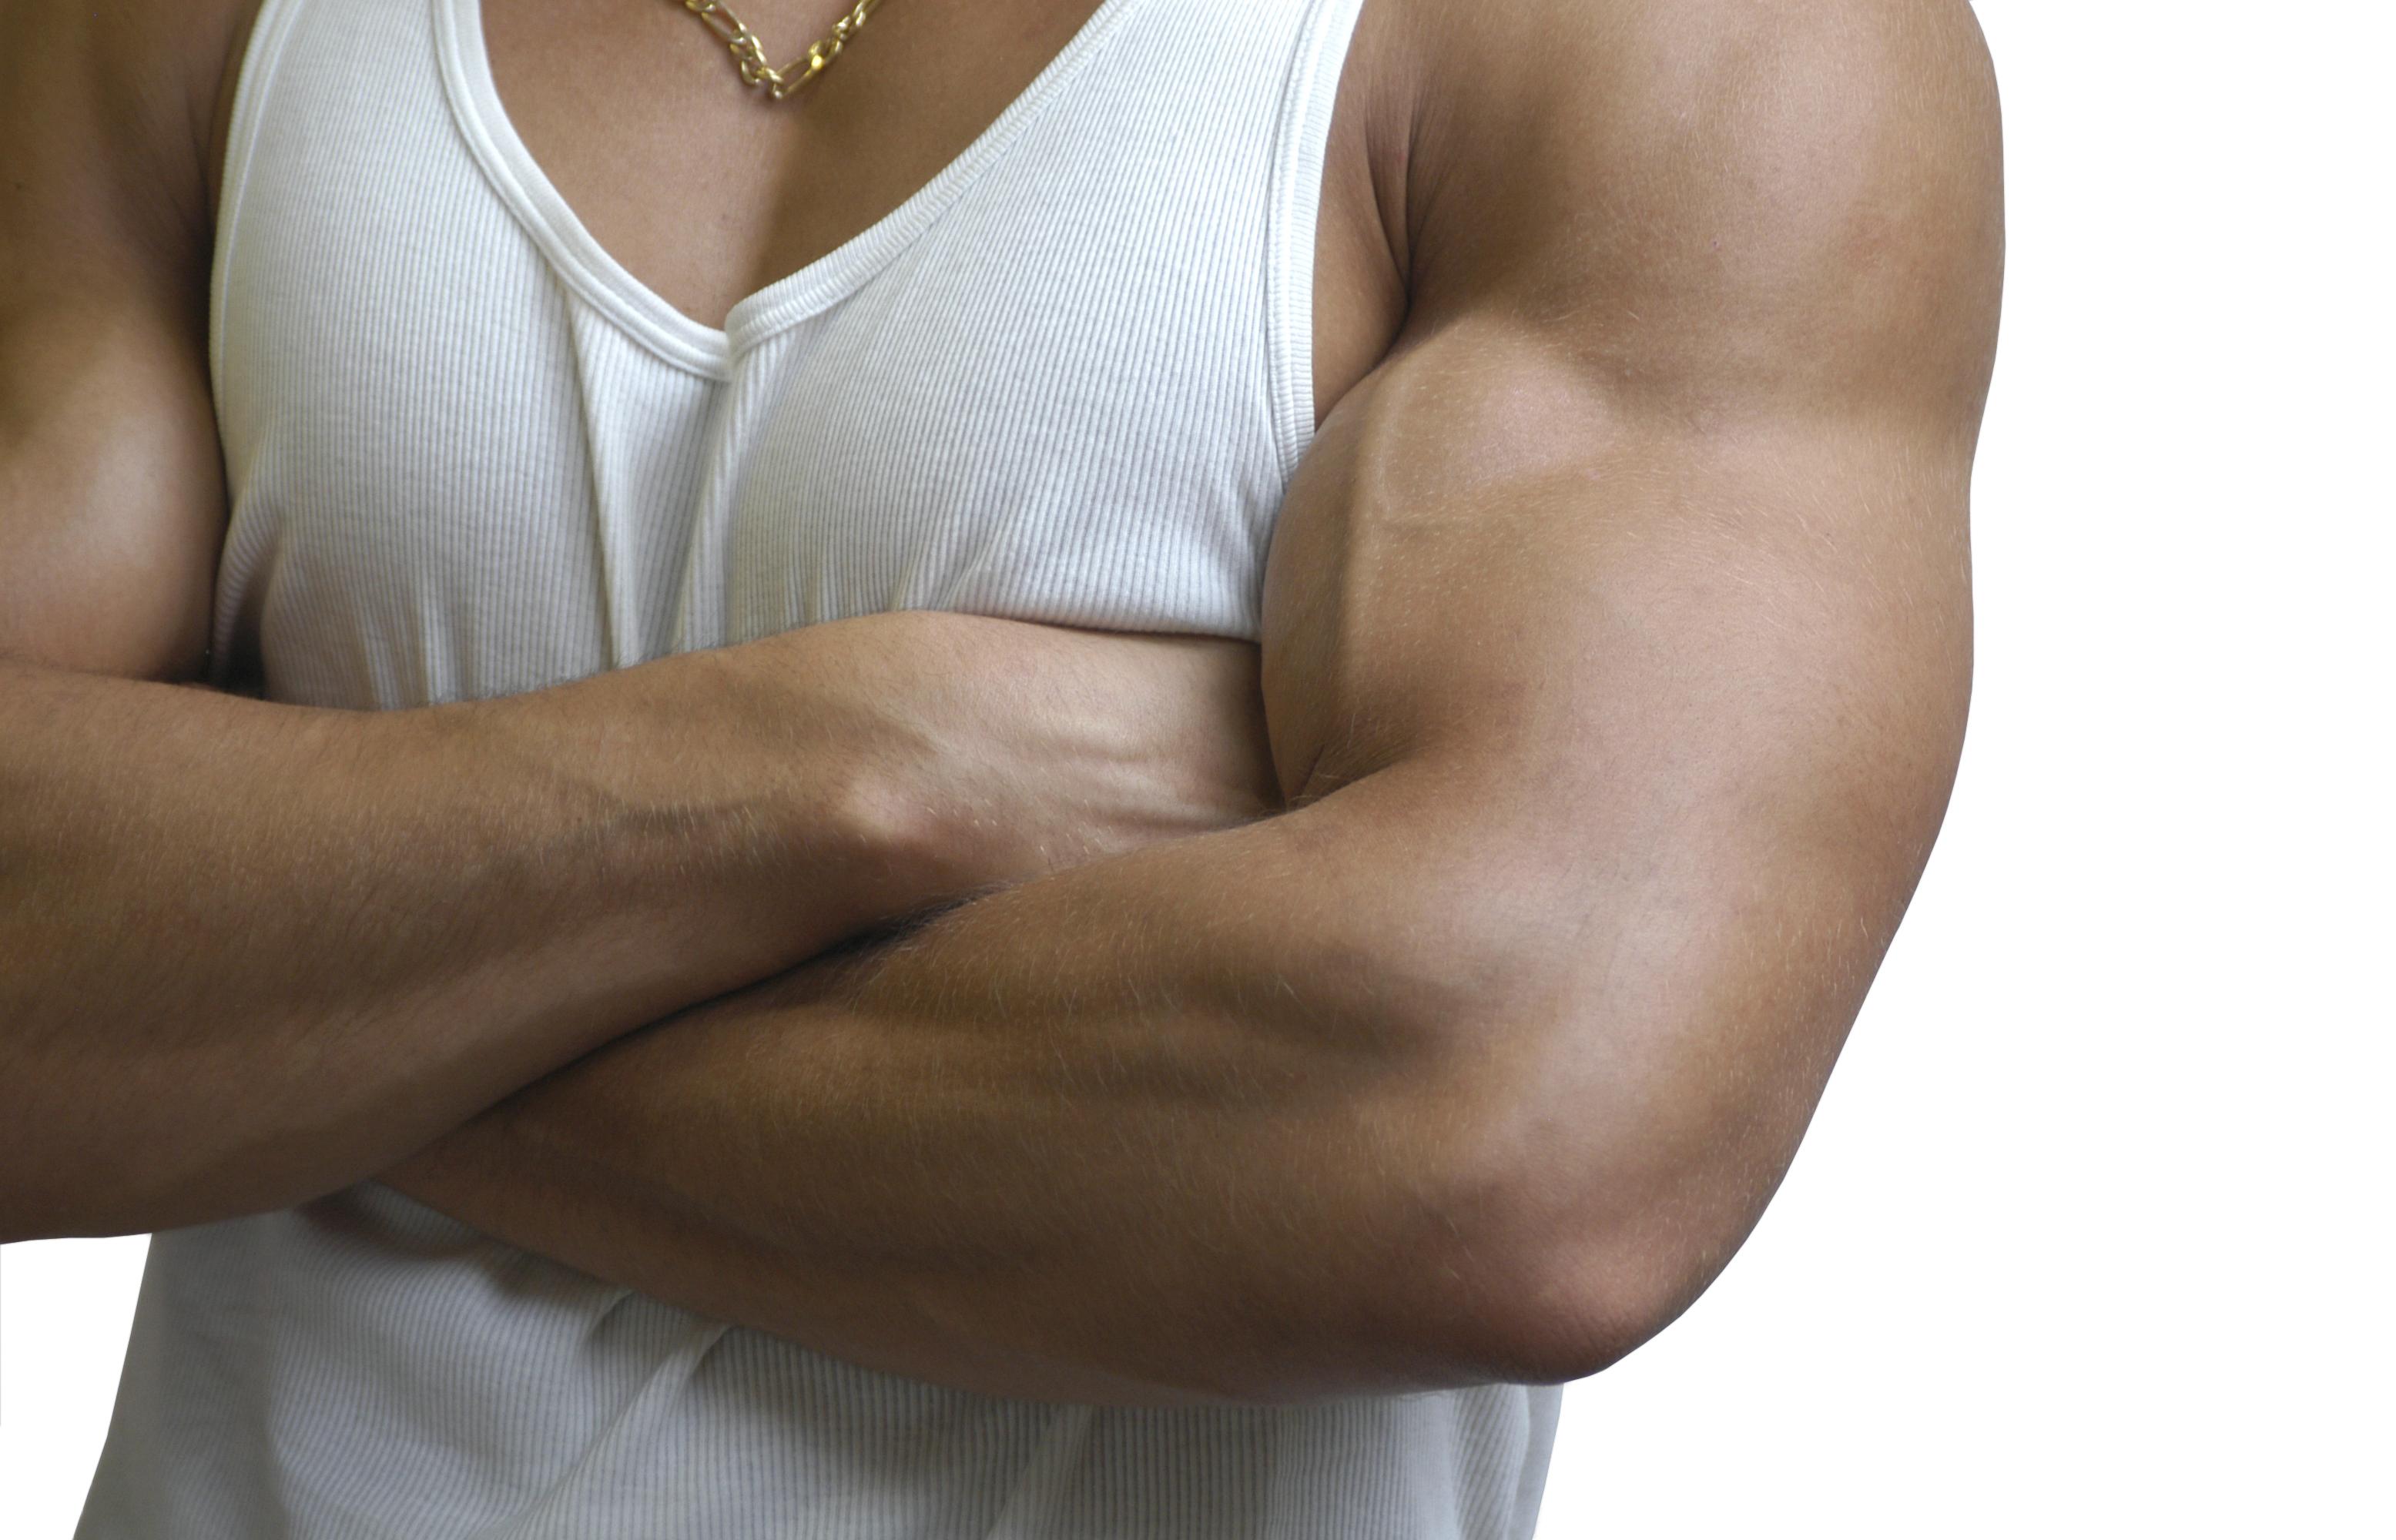 Trener du biceps uten utstyr?